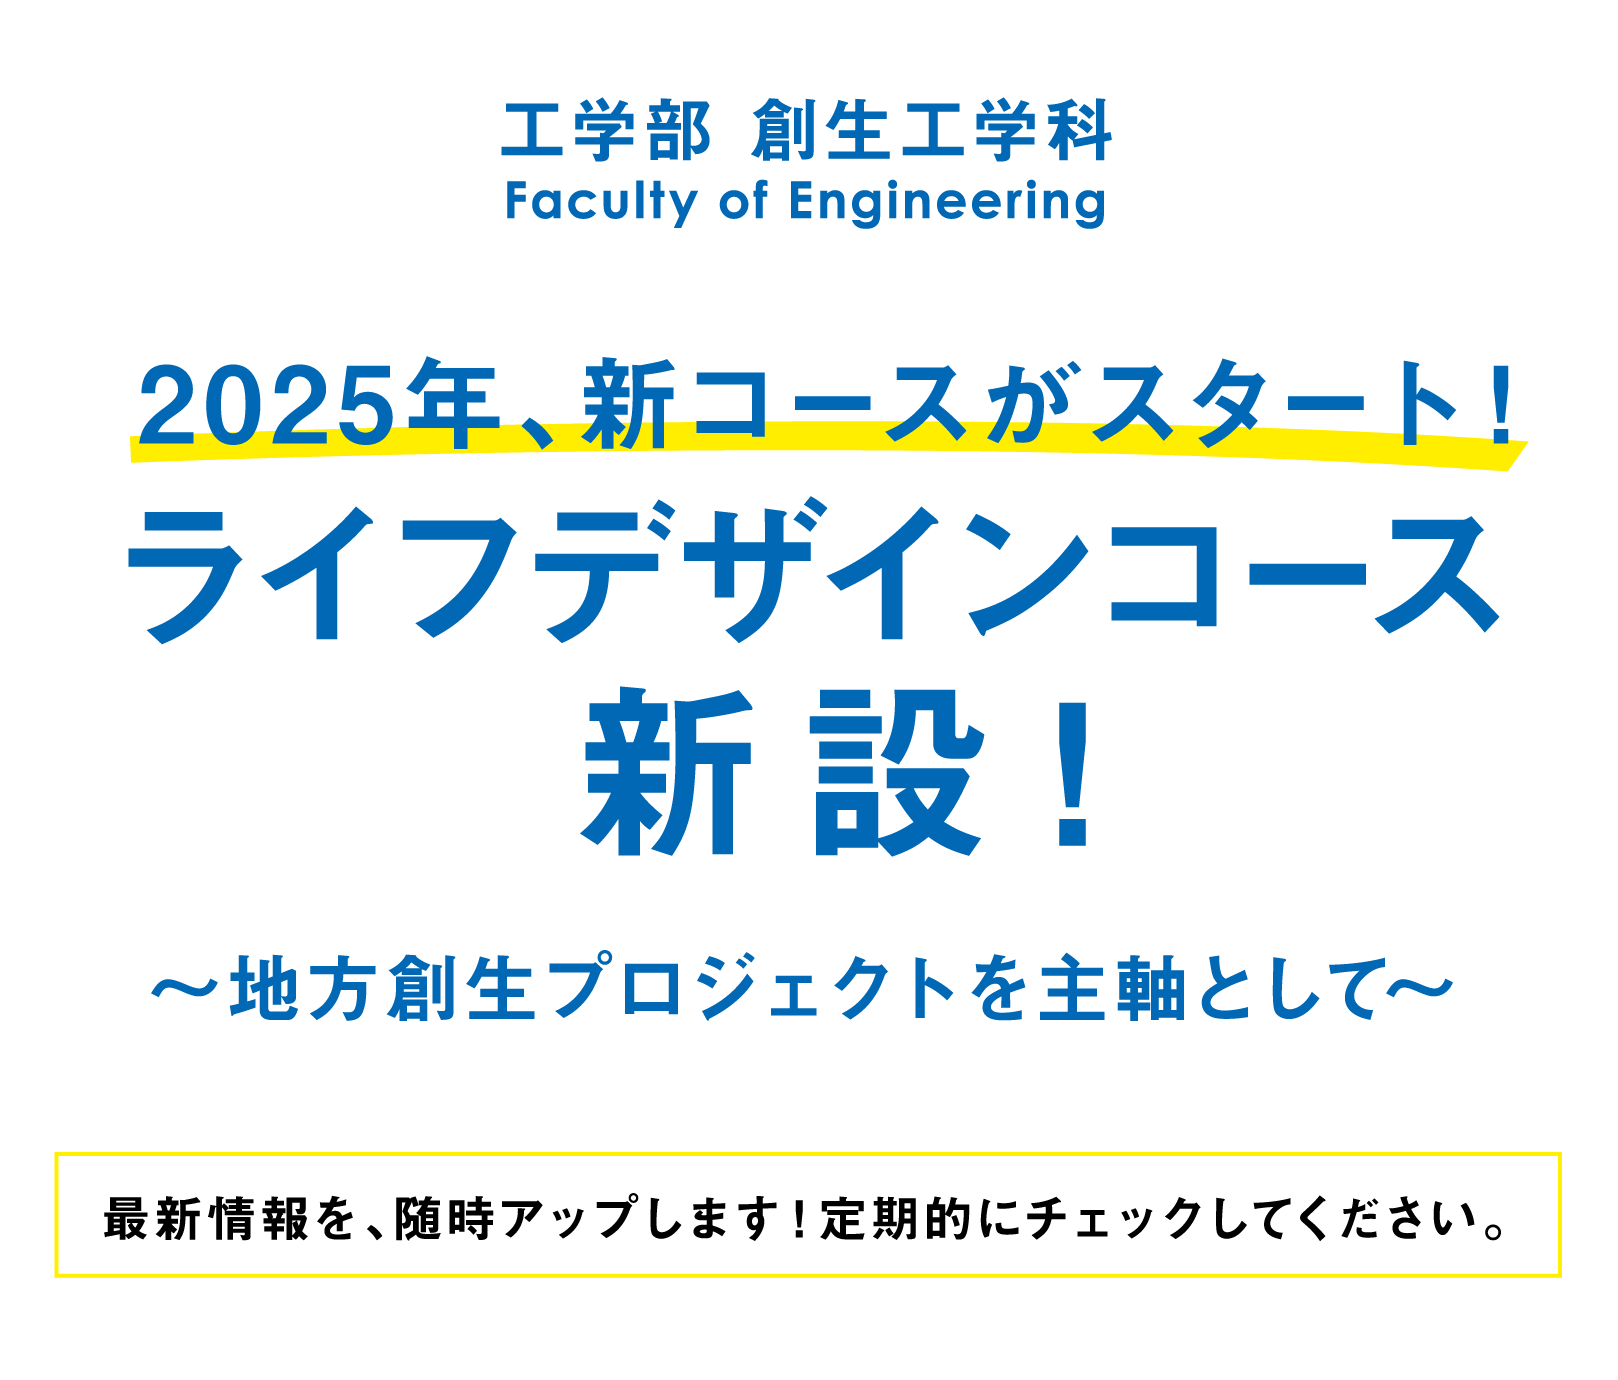 工学部 創生工学科 2025年、新コースがスタート！ライフデザインコース新設！〜地方創生プロジェクトを主軸として〜